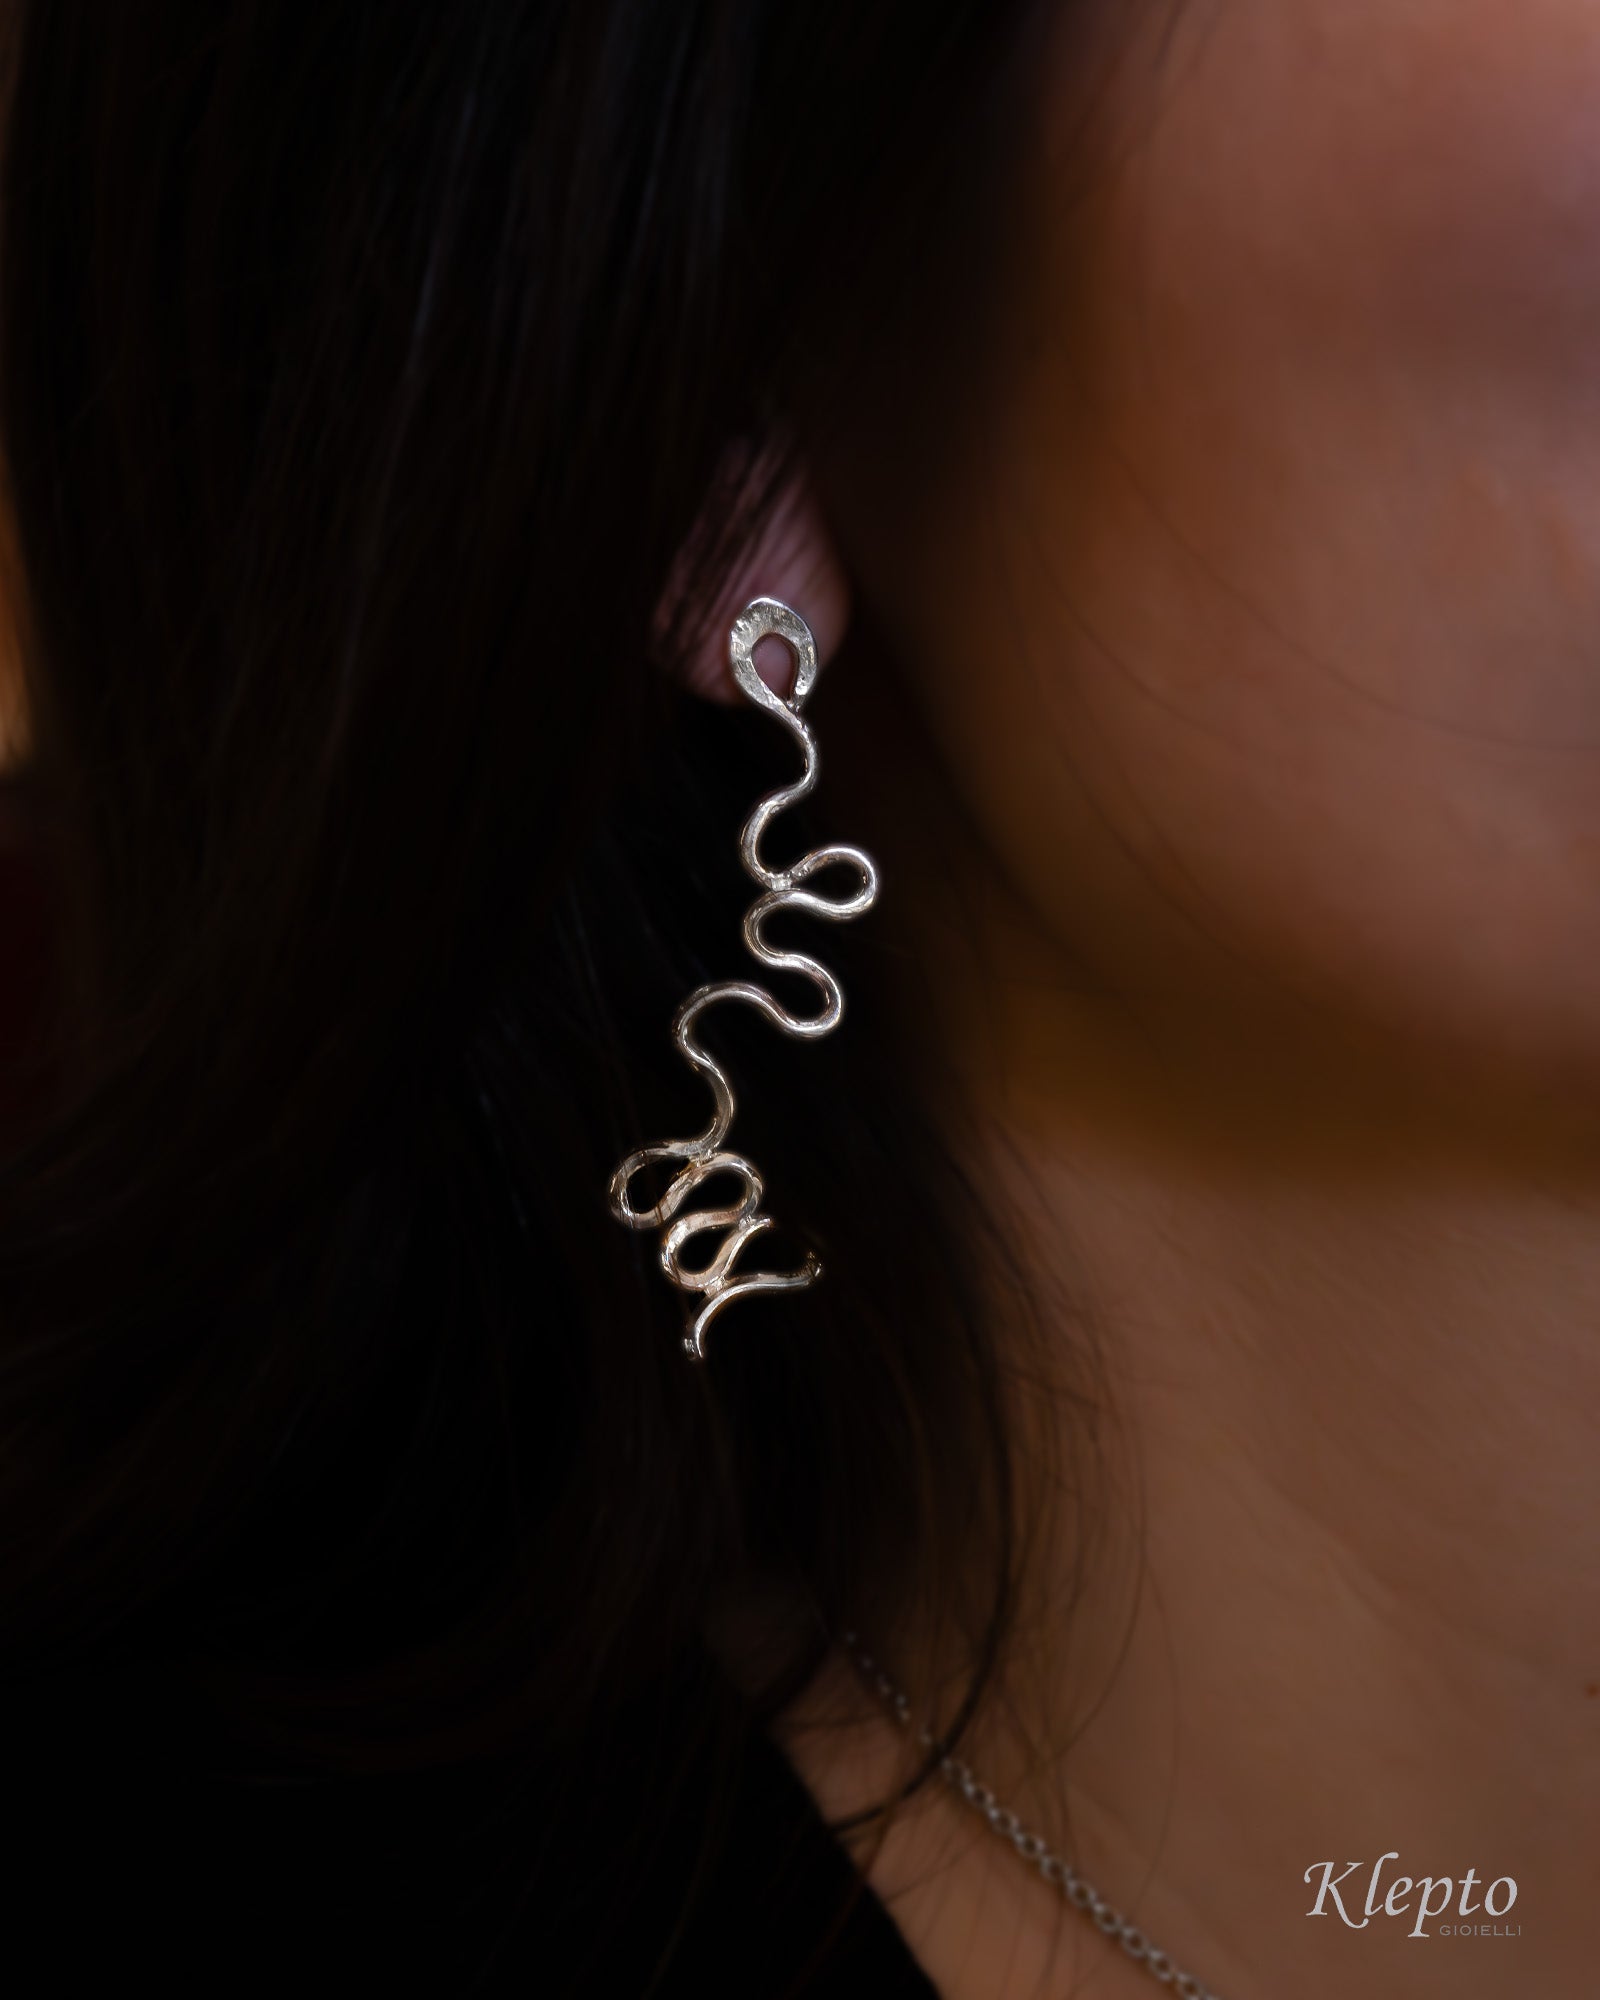 Silver Silnova® wavy wire earrings